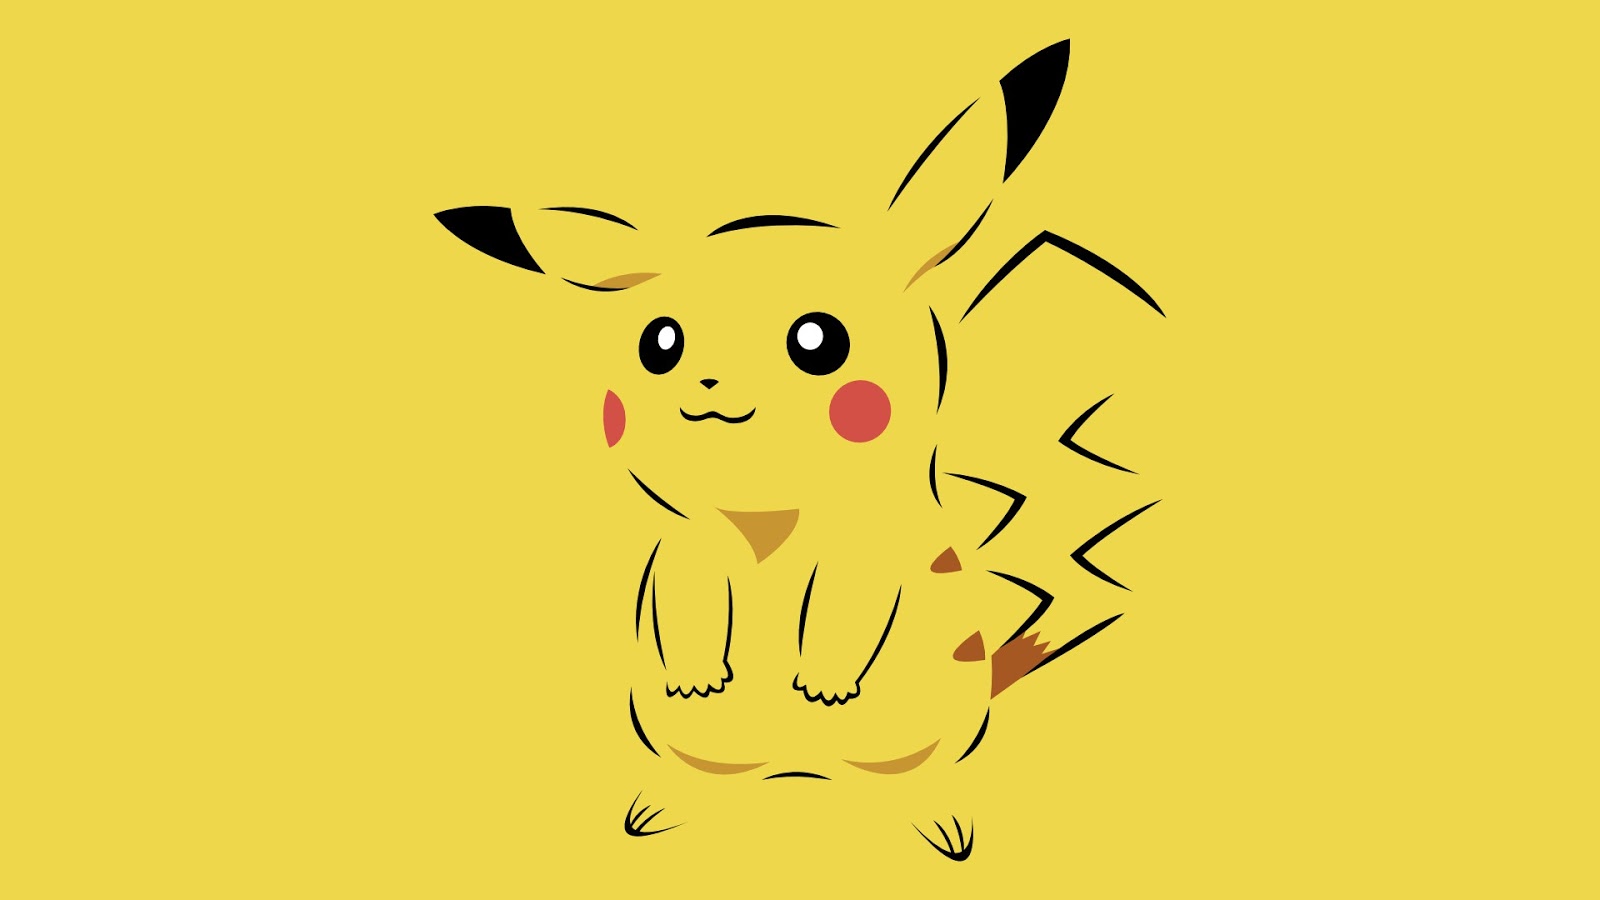 Bạn đang tìm kiếm hình ảnh pikachu dễ thương? Đừng bỏ lỡ bức hình này! Pikachu ở đây được thiết kế với những biểu cảm tuyệt đẹp, chắc chắn sẽ khiến bạn yêu thích.